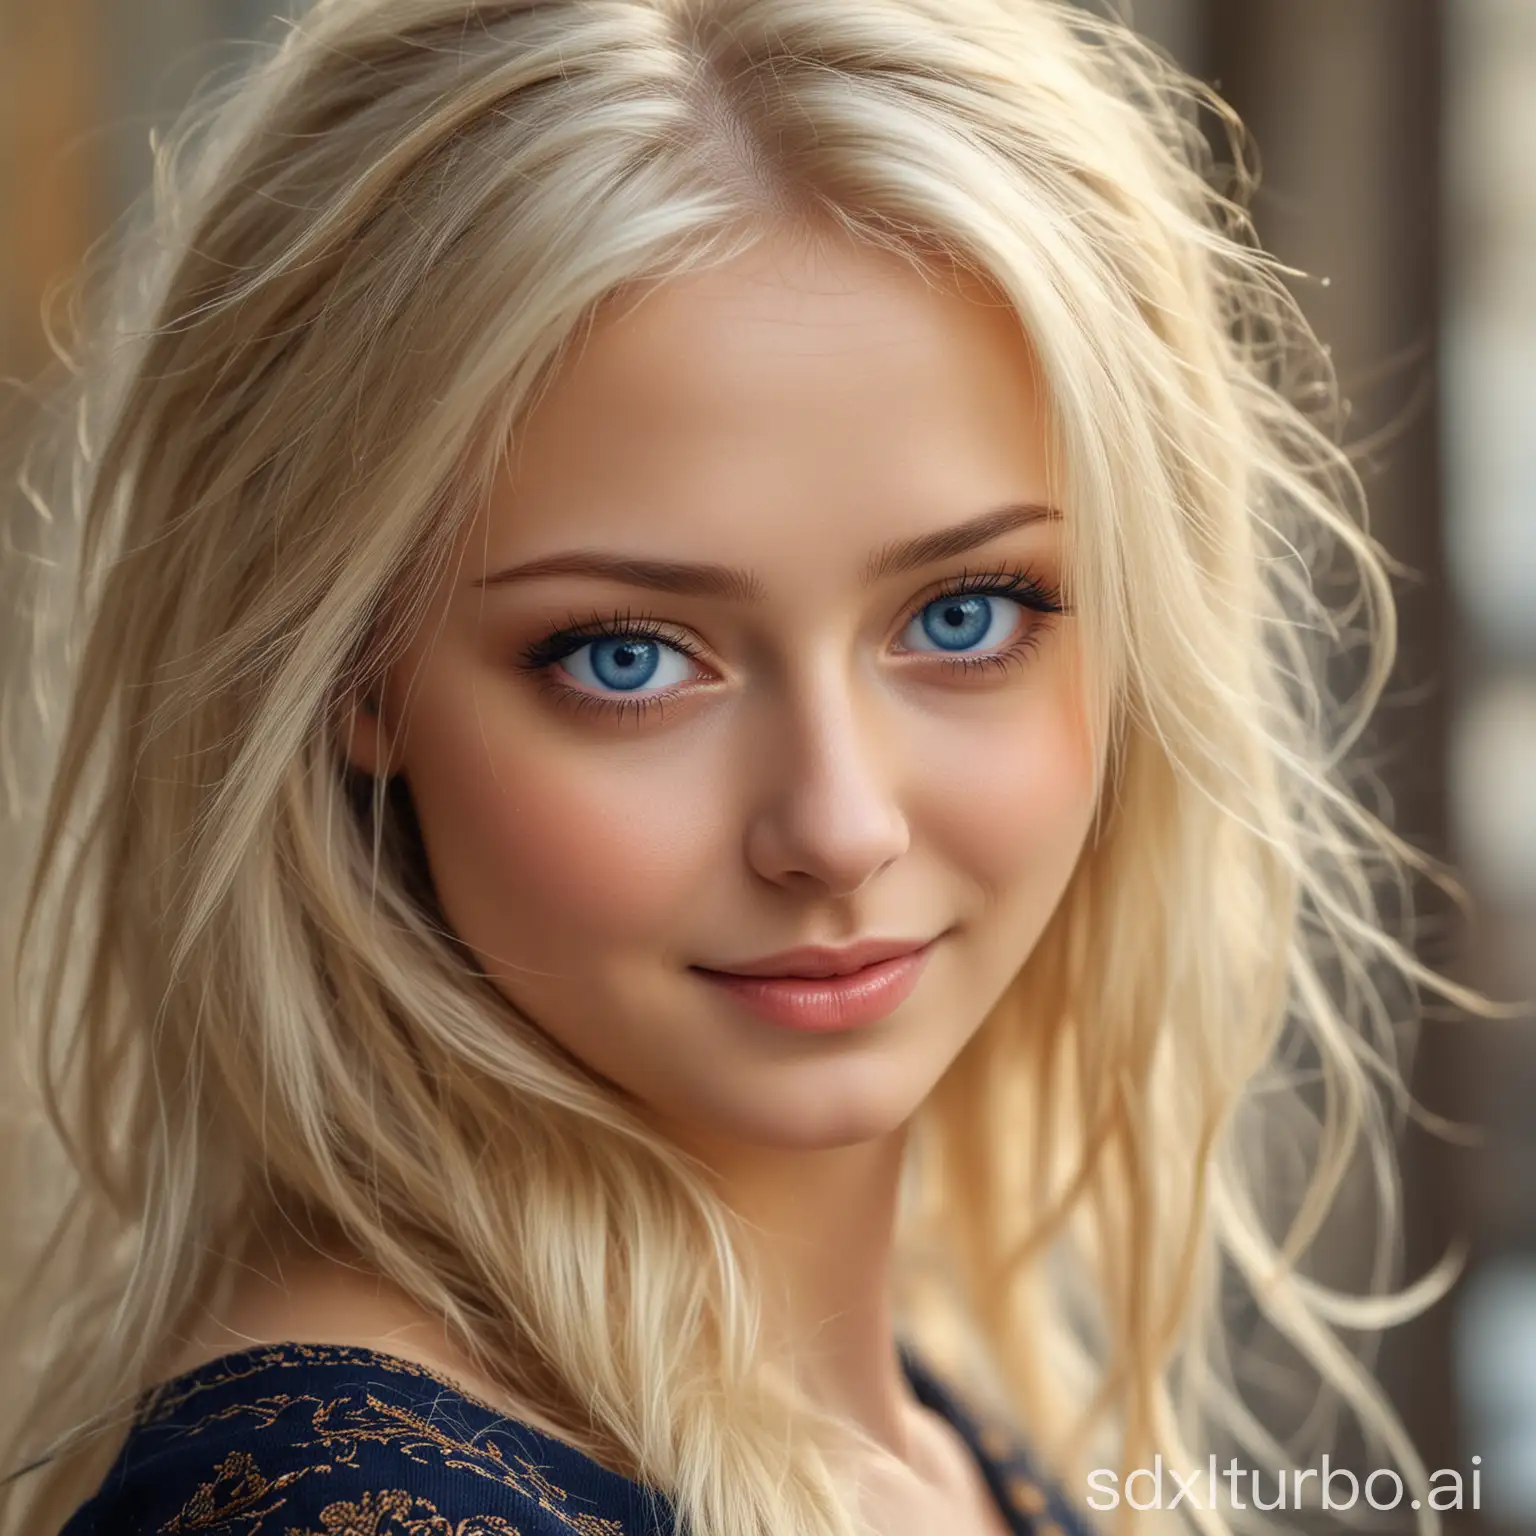 俄罗斯美女，高挑，金发碧眼，精致，优雅，肌肤白皙，曲线优美，眼睛深邃，气质独特，神秘感，笑容迷人，蓝眼睛，高鼻梁，高清